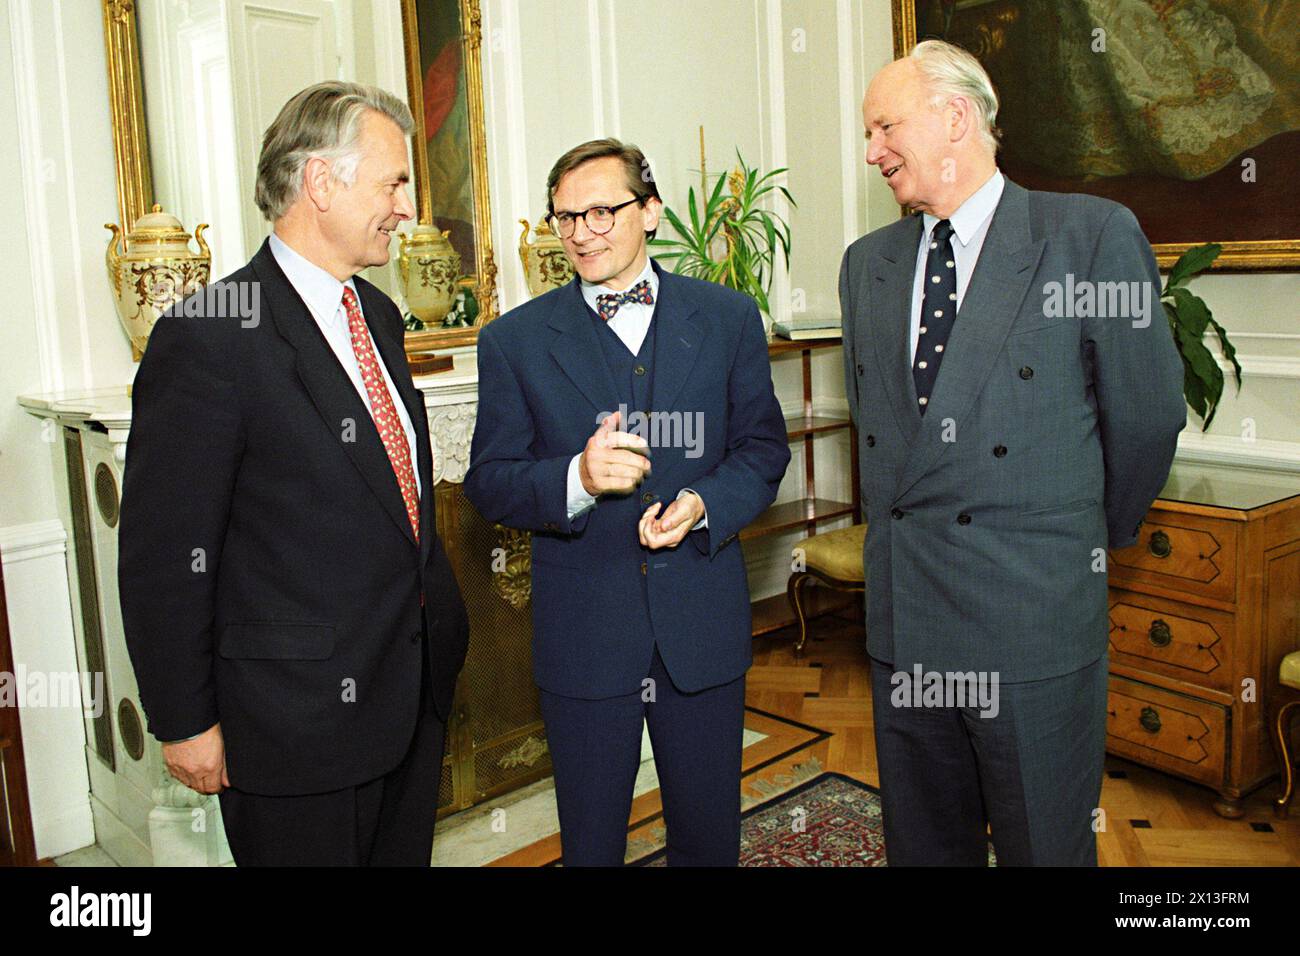 Vienna il 29 maggio 1995: (l-r) incontro tra il negoziatore jugoslavo dell'Unione europea, David Owen, il ministro degli esteri austriaco Wolfgang Schuessel e il negoziatore dell'ONU Thorwald Stoltenberg. - 19950523 PD0002 - Rechteinfo: Diritti gestiti (RM) Foto Stock